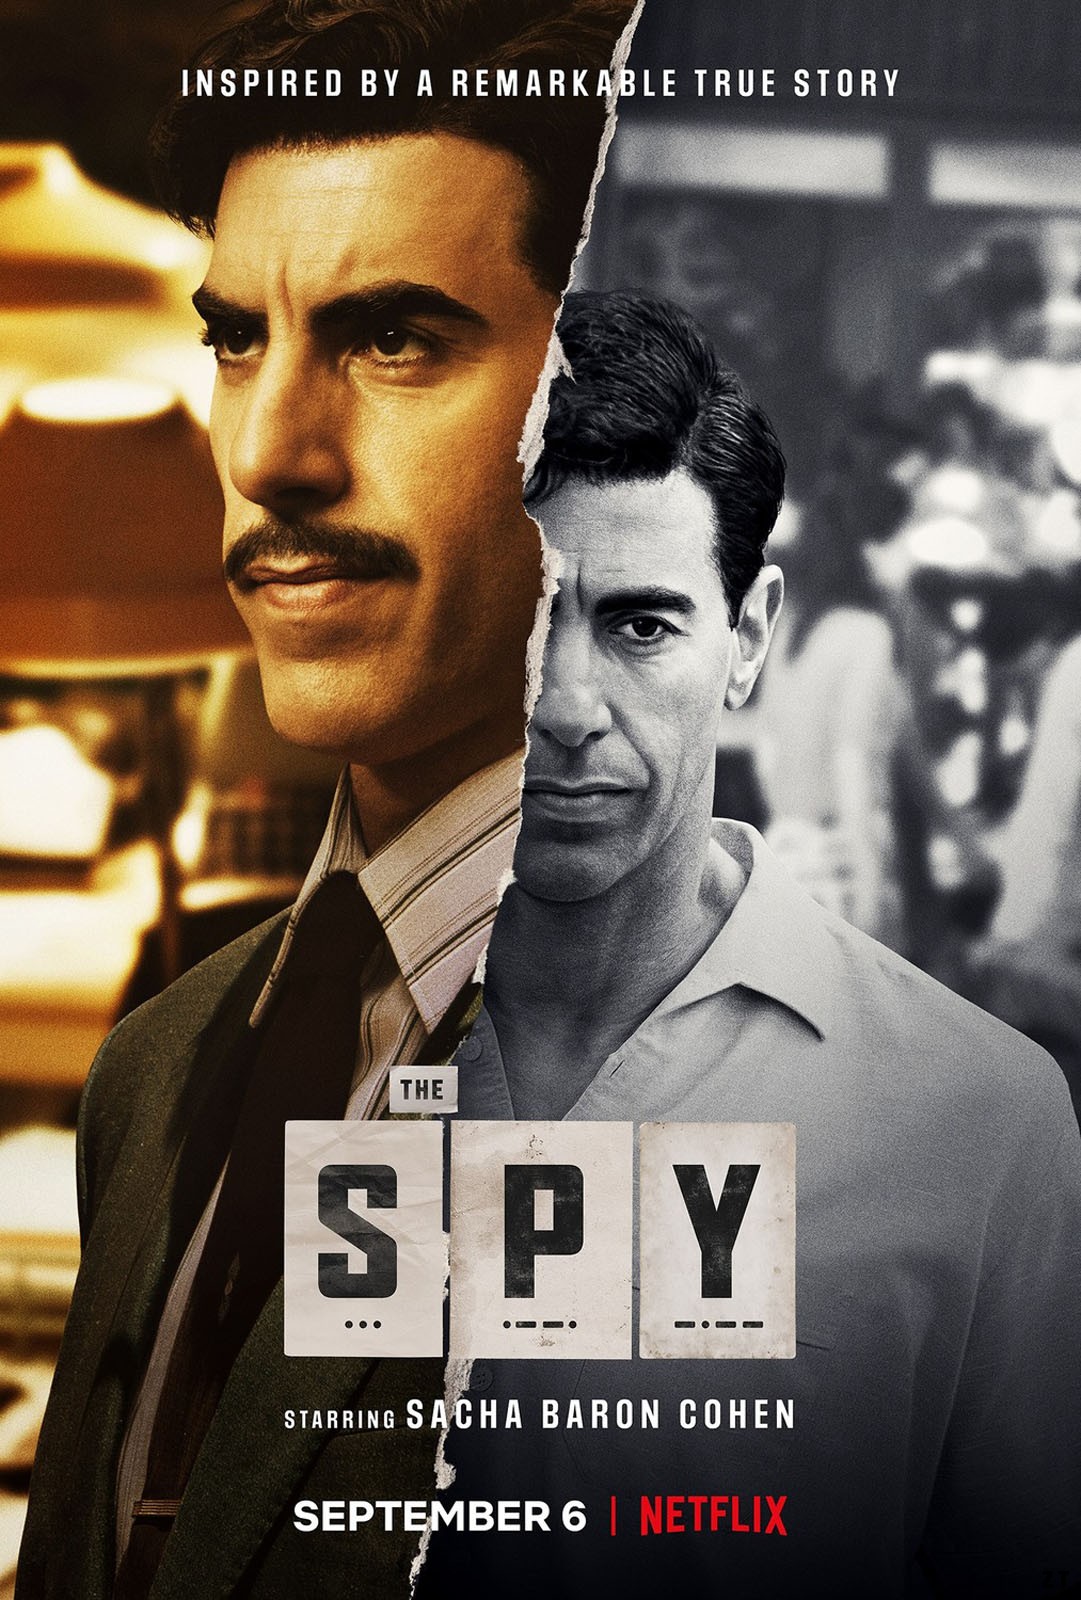 The Spy S01E03 VOSTFR HDTV